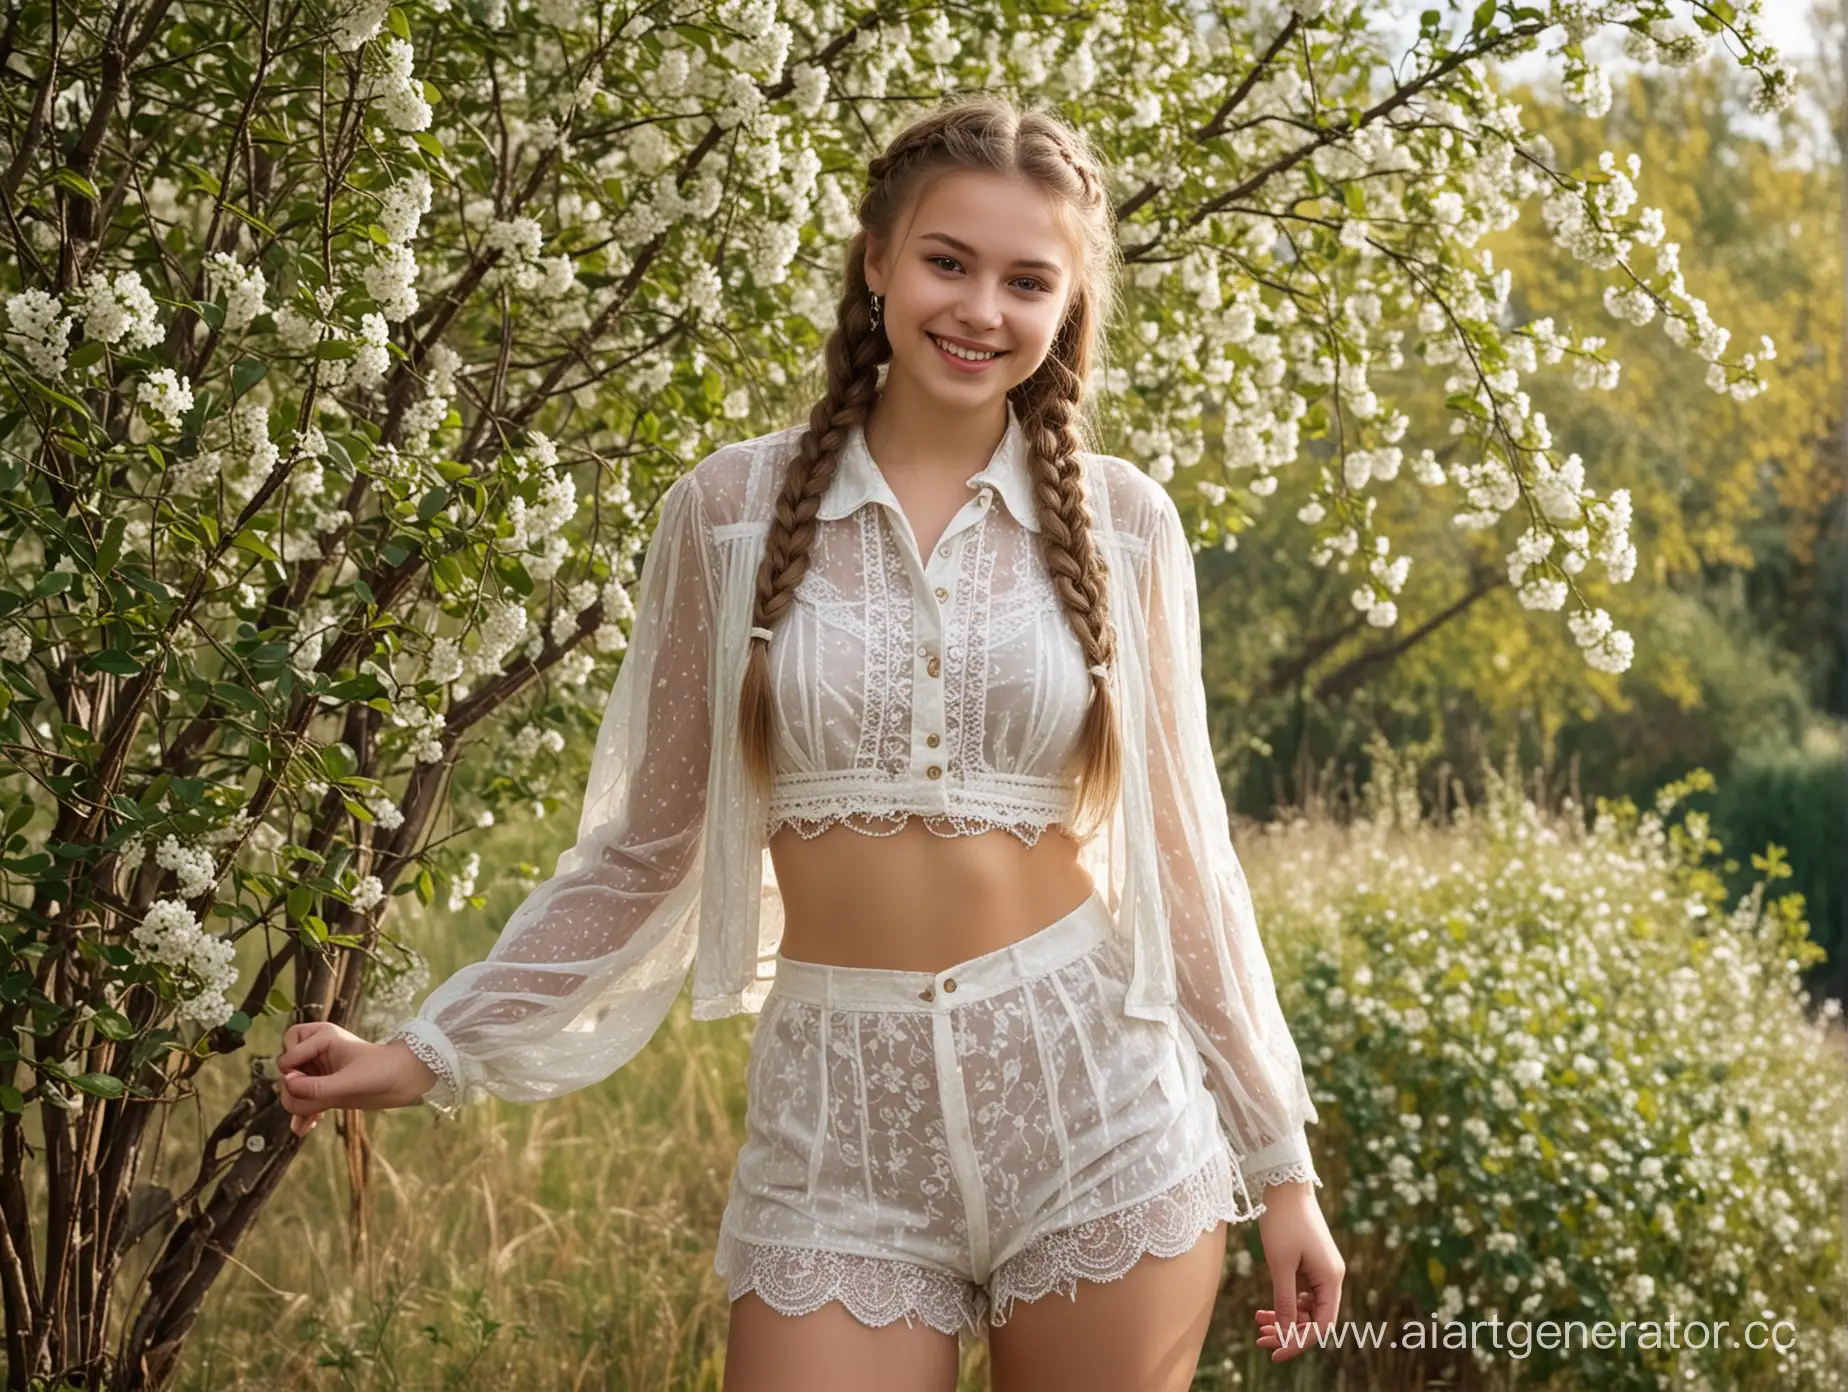 Портрет, Деревенский дом, вишнёвые ветки, Молодая 18 лет русская девушка  улыбается, кружевные полупрозрачные шорты с высокой талией, короткая распашонка, длинные косы